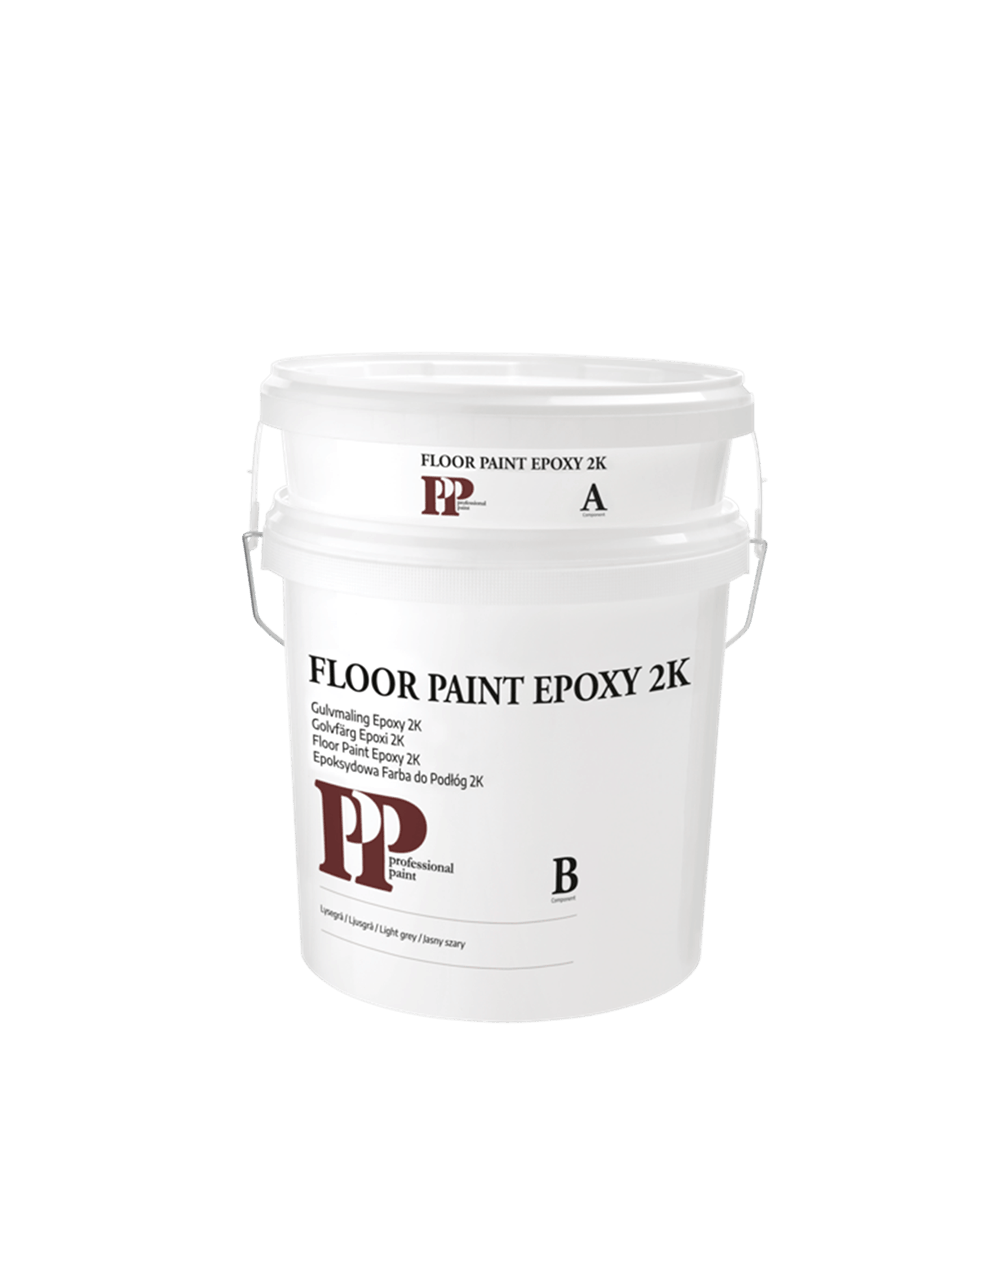 pp_epoxy_floor_paint_55de